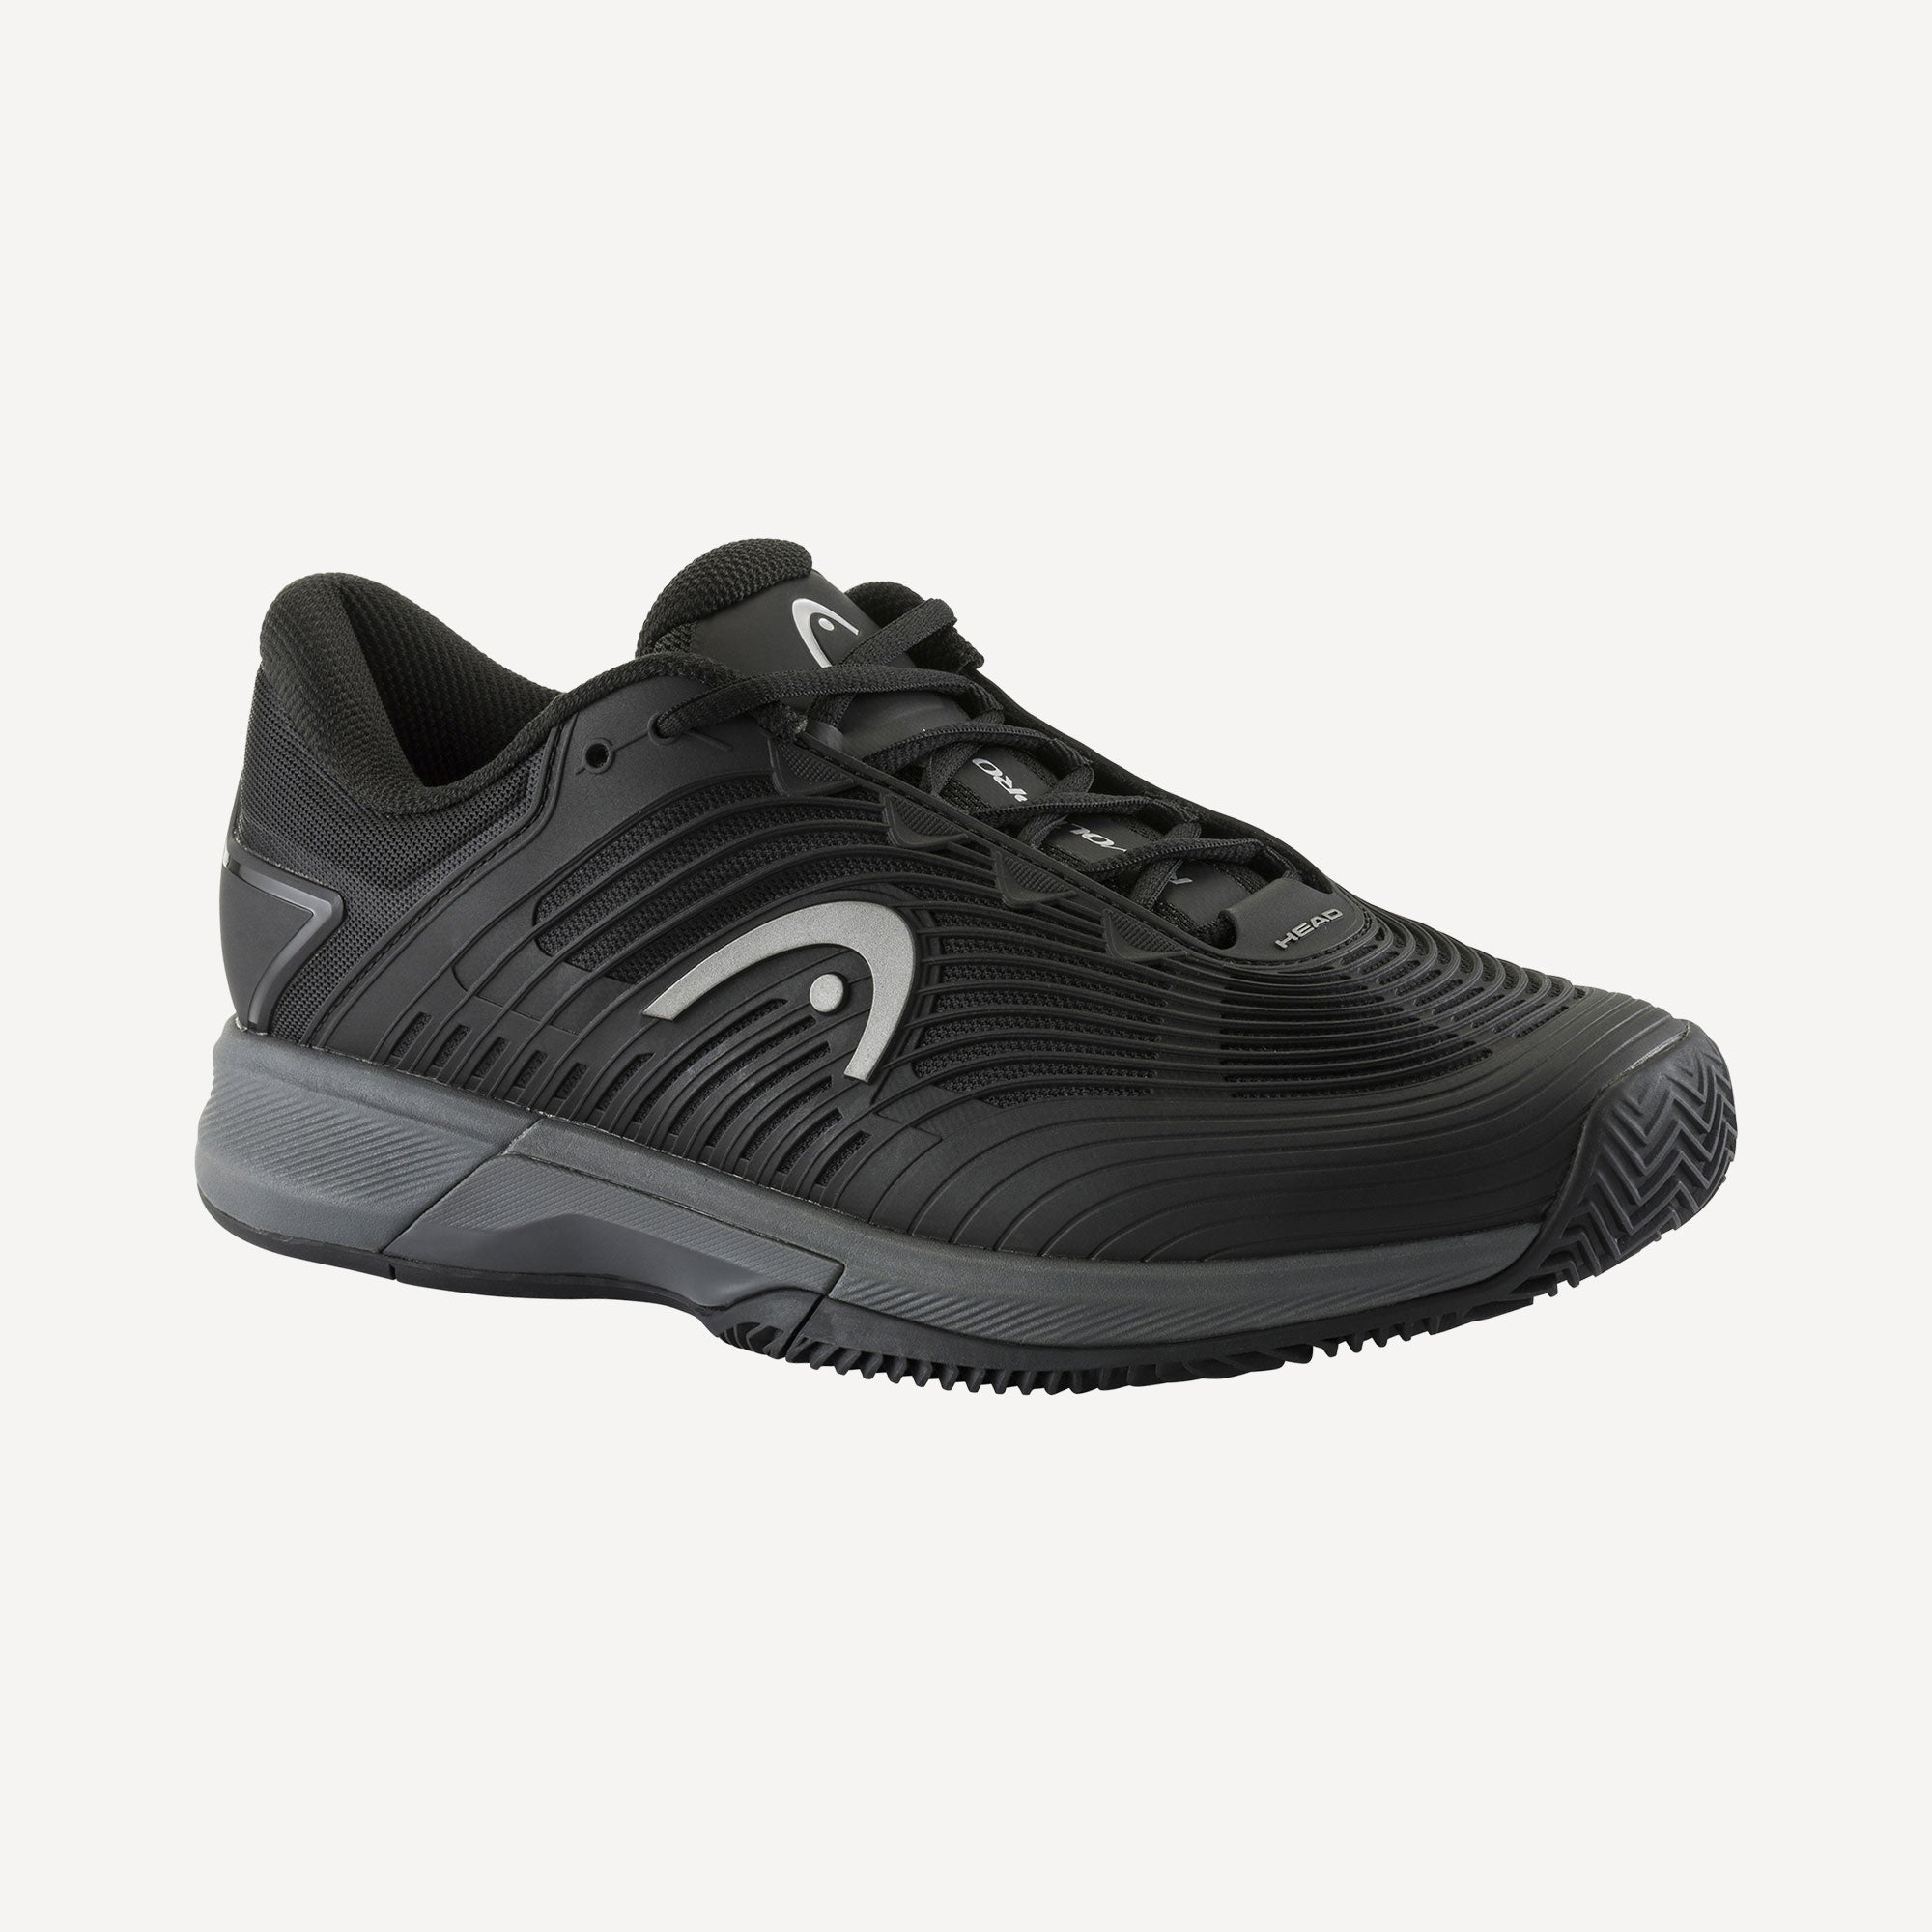 HEAD Revolt Pro 4.5 Men's Clay Court Tennis Shoes - Black (1)